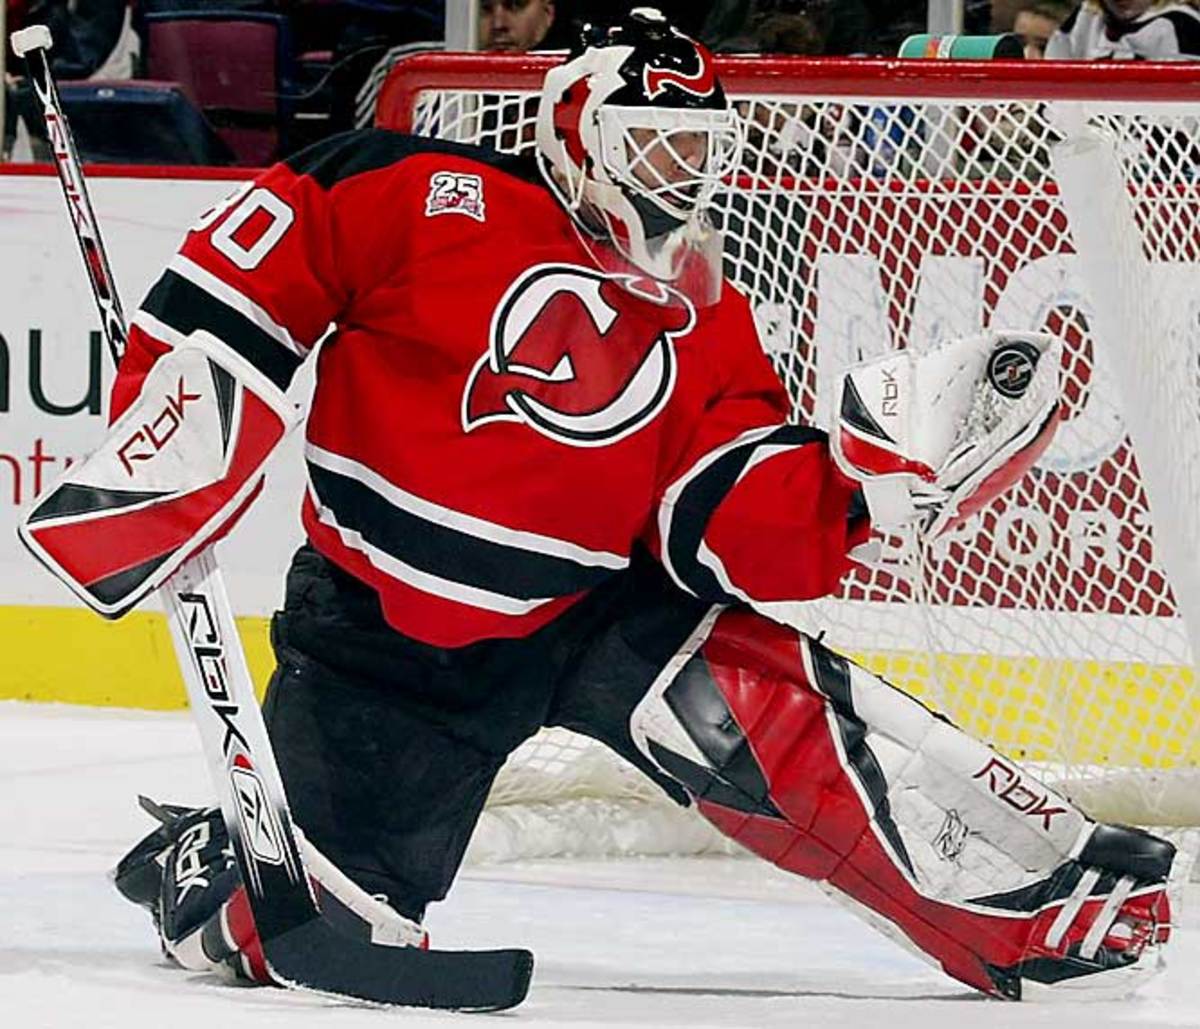 Martin Brodeur | goaltender | New Jersey Devils